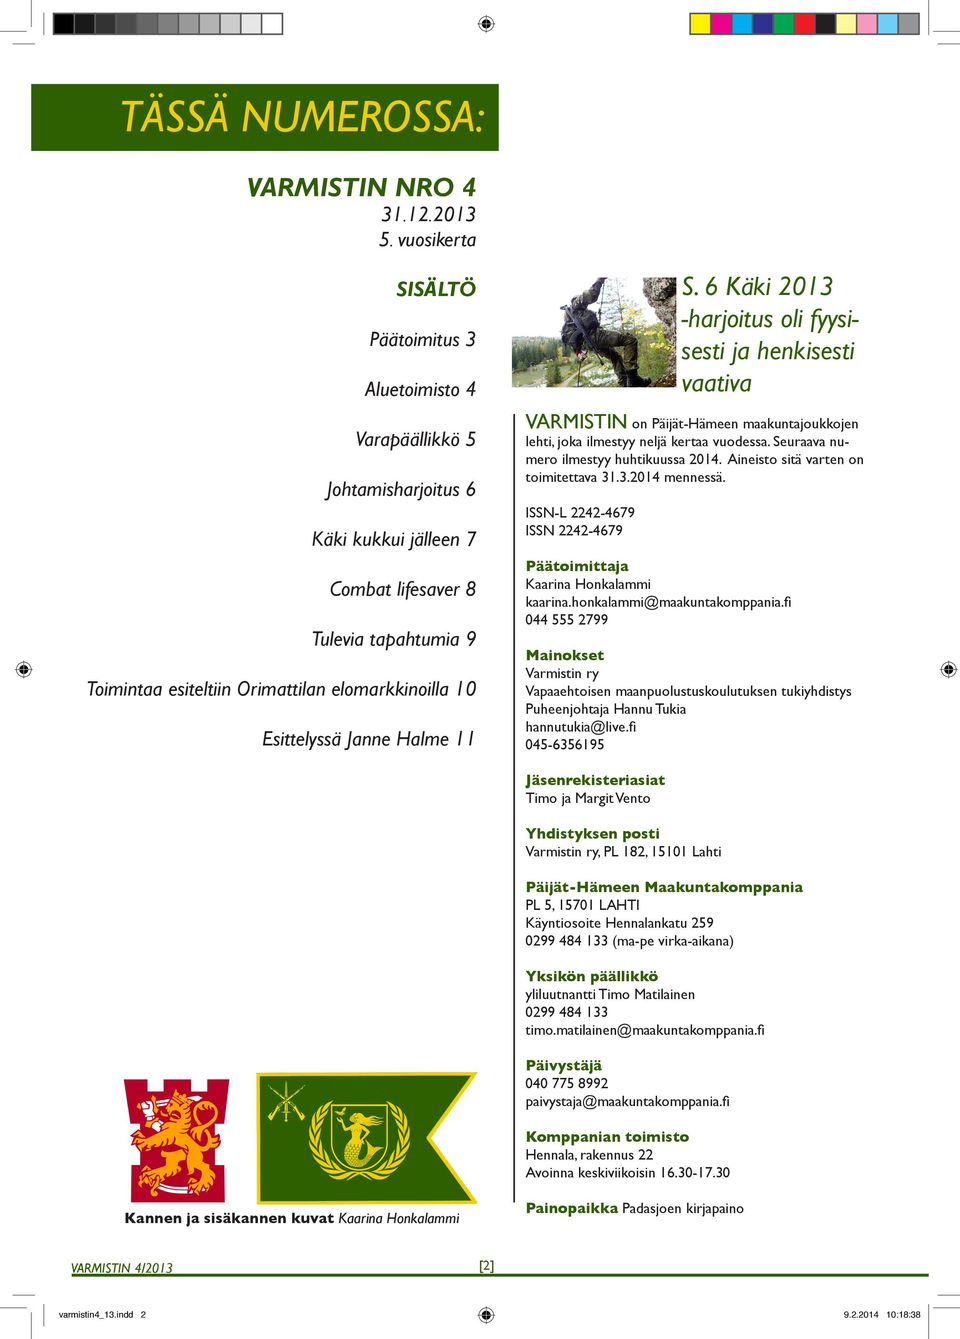 Esittelyssä Janne Halme 11 VARMISTIN on Päijät-Hämeen maakuntajoukkojen lehti, joka ilmestyy neljä kertaa vuodessa. Seuraava numero ilmestyy huhtikuussa 2014. Aineisto sitä varten on toimitettava 31.